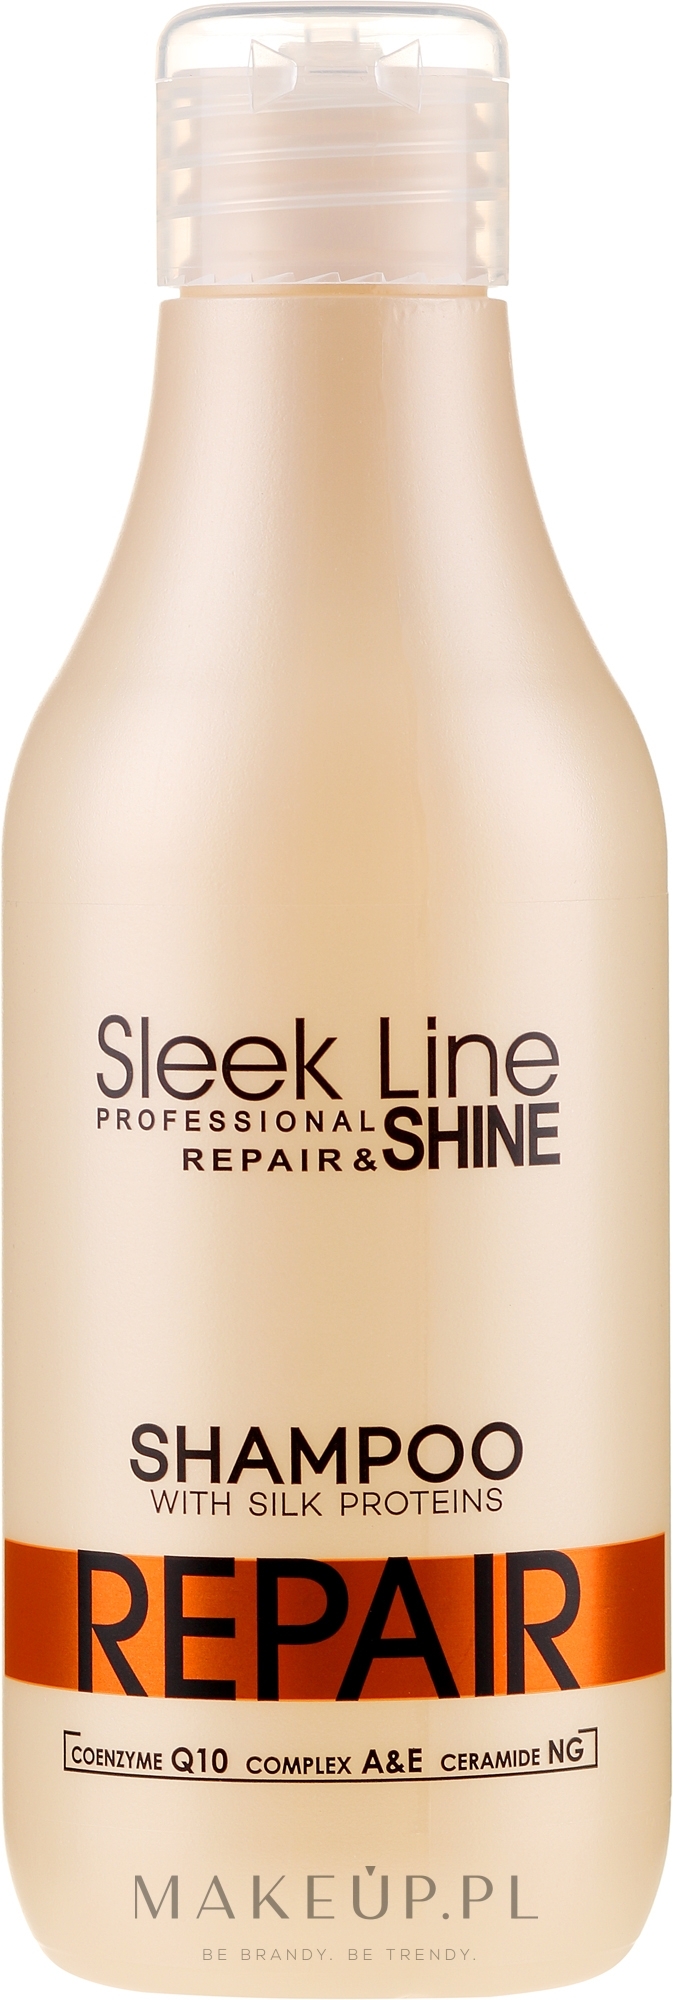 stapiz sleek line repair szampon do włosów wizaz